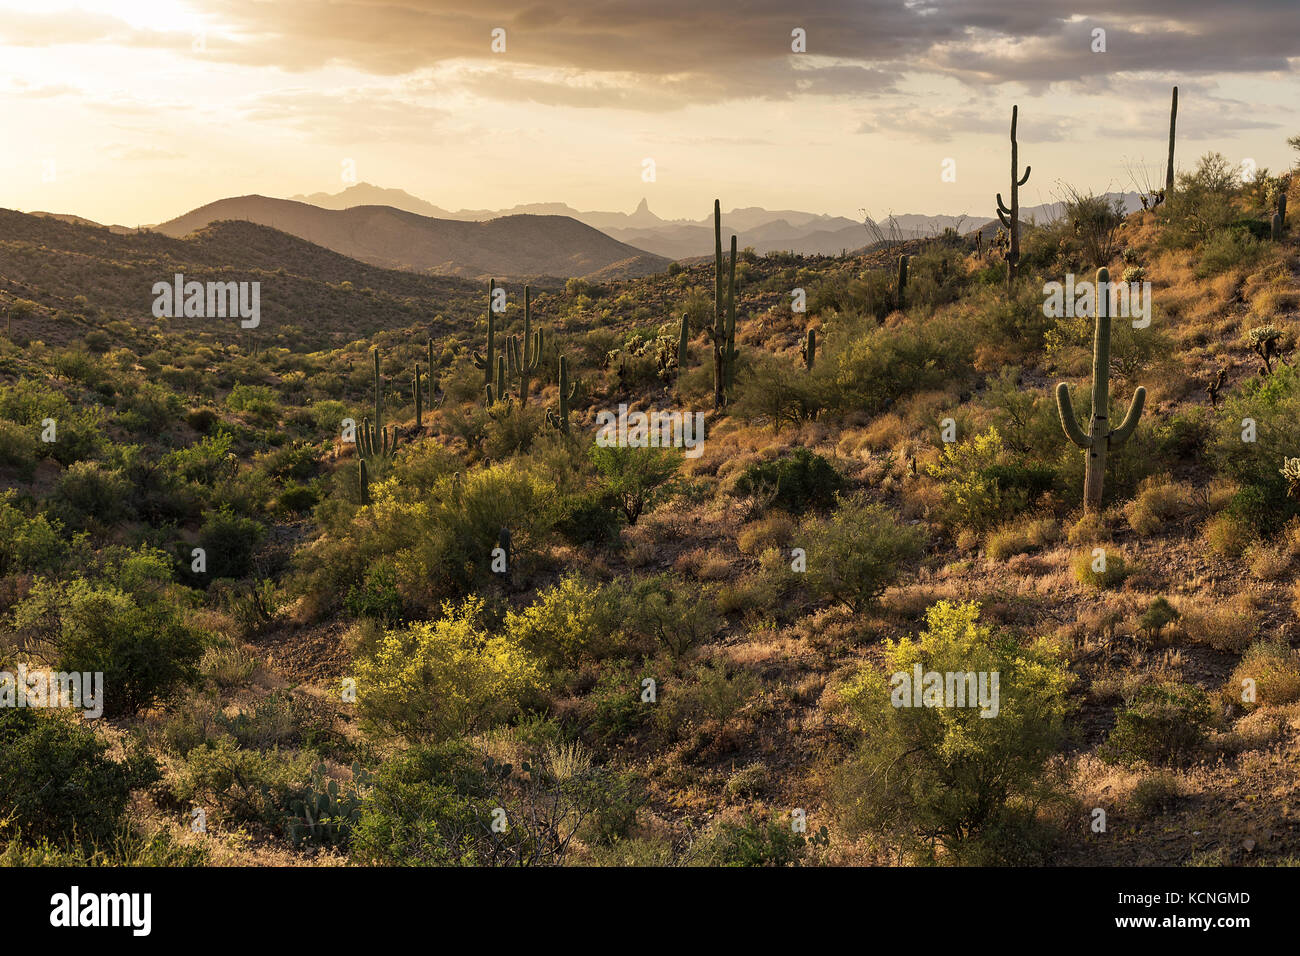 Landschaftlich reizvolle Sonoran-Wüstenlandschaft mit Saguaro Cactus in der Nähe von Phoenix, Arizona Stockfoto